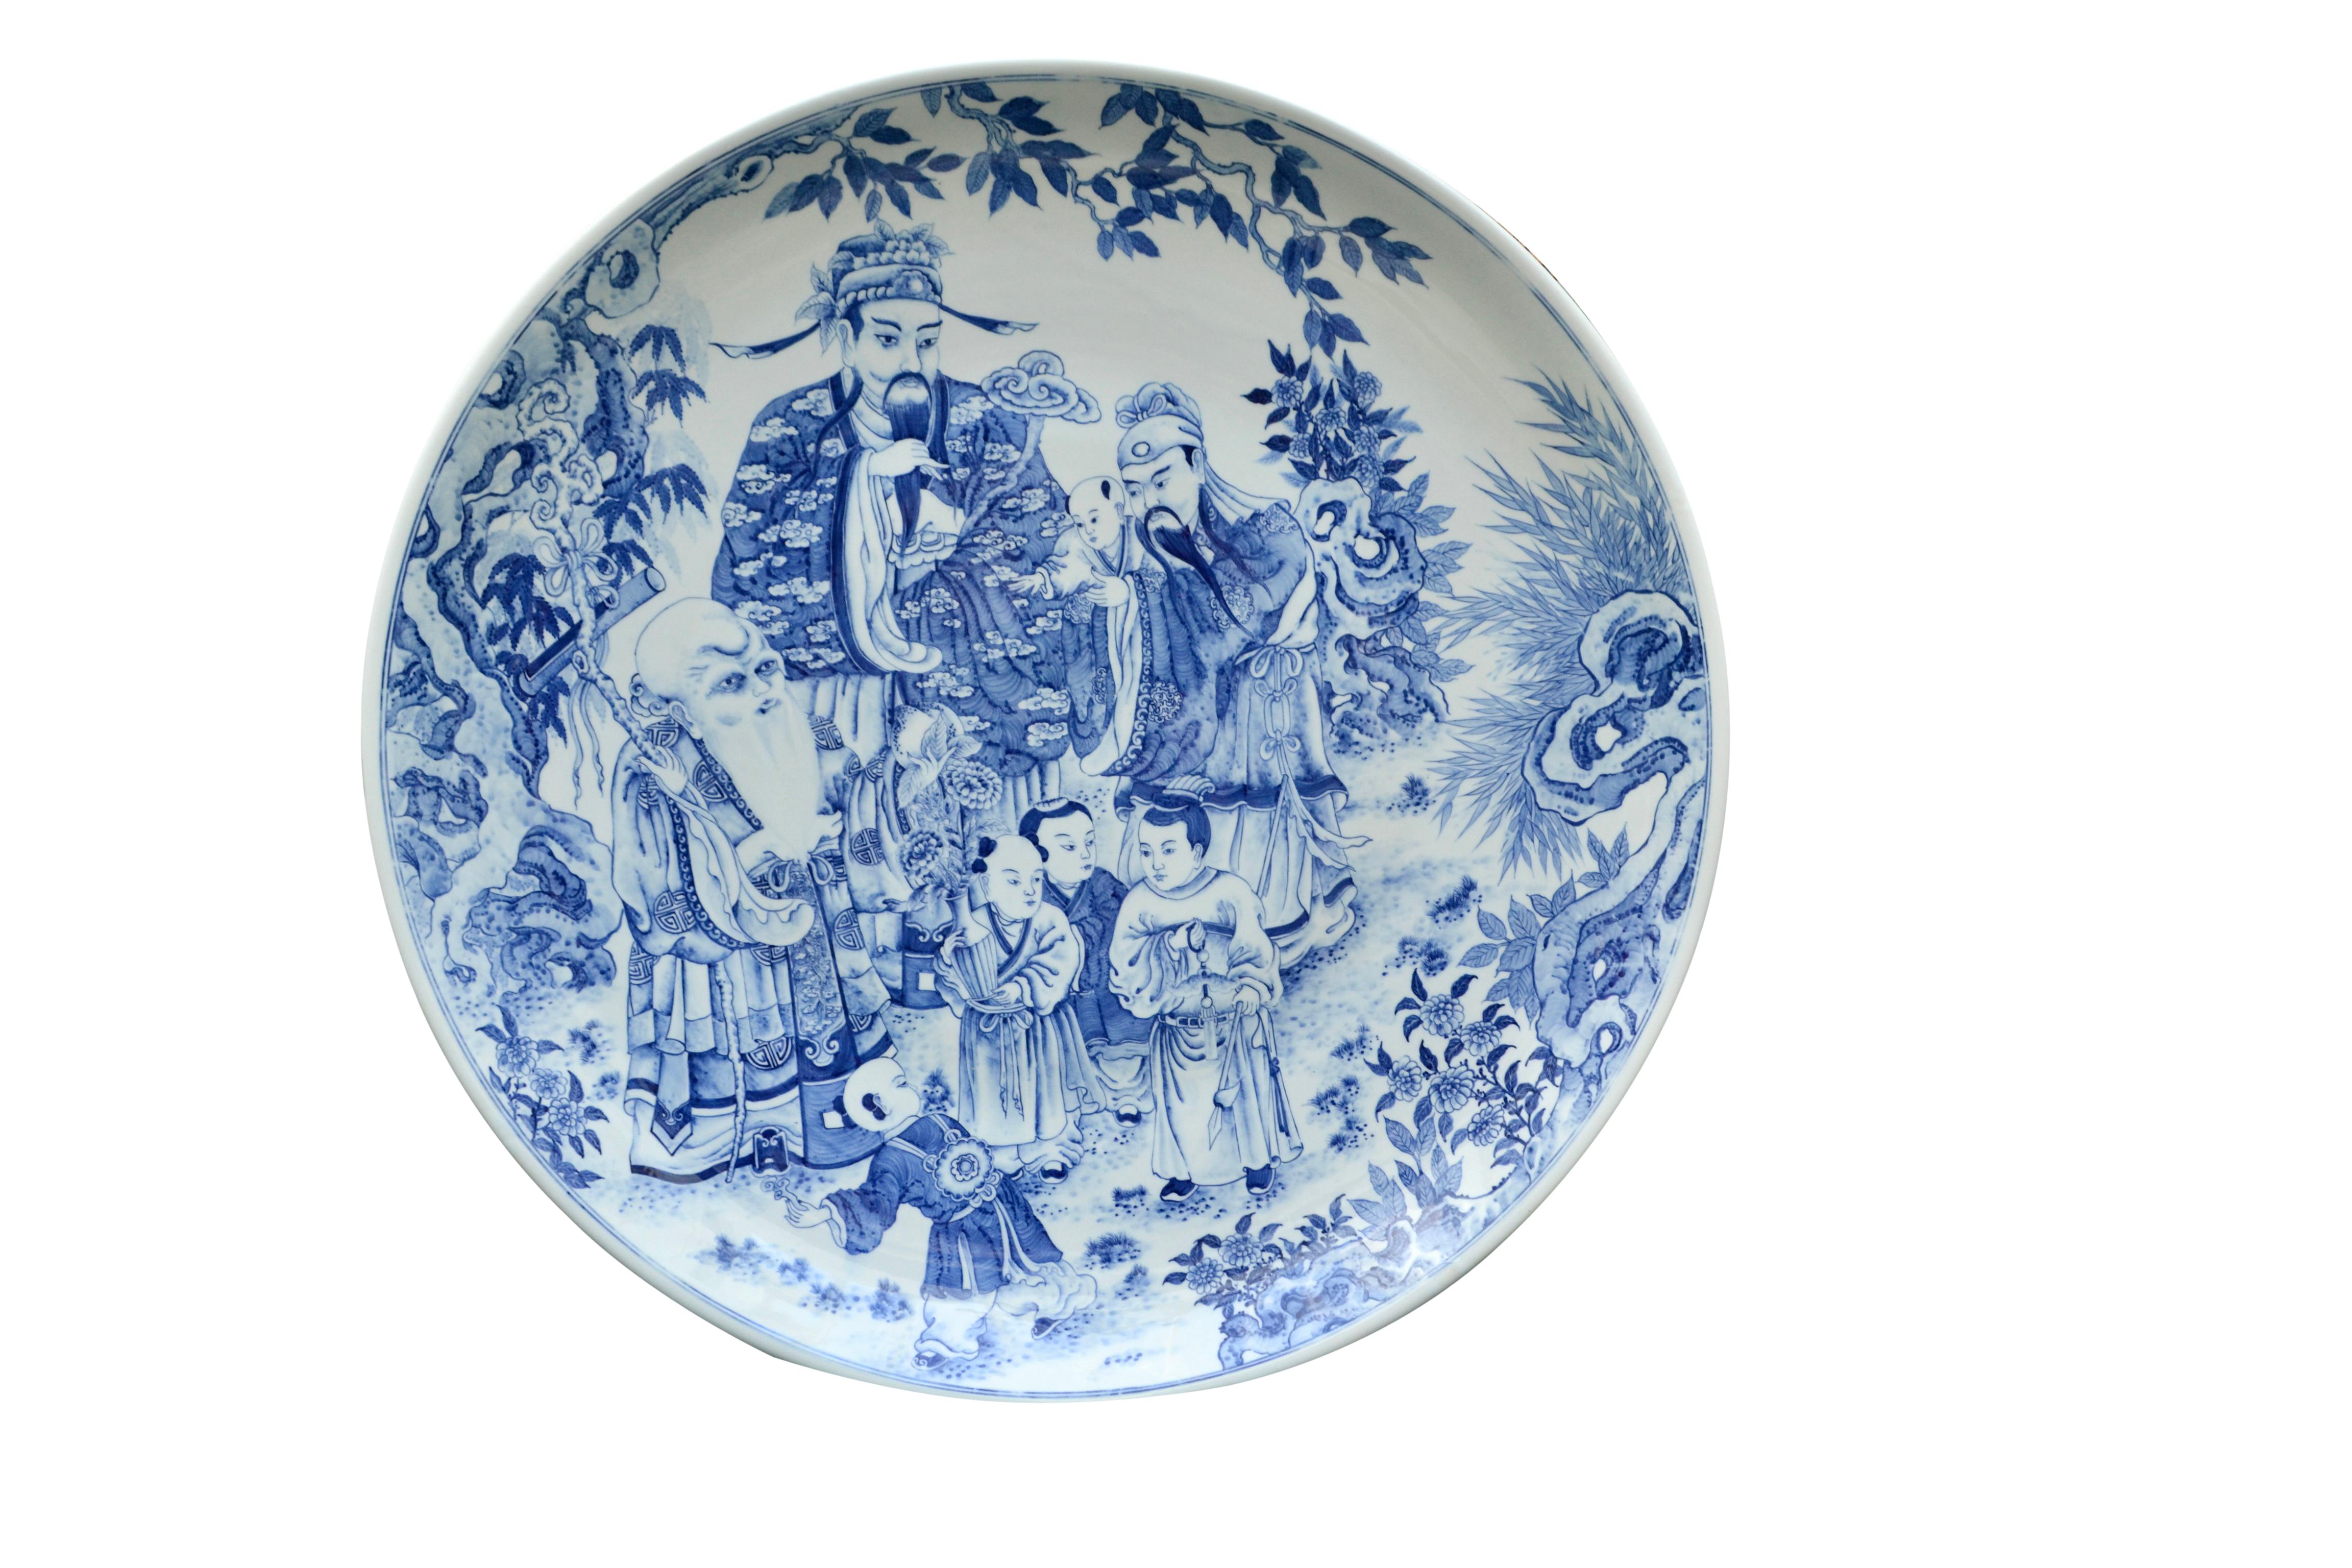 Un très grand et impressionnant chargeur en porcelaine chinoise bleu et blanc représentant le concept taoïste de bonne fortune (Fu), de revenus stables (Lu) et de longue vie (Shou). Fu est à droite tenant son petit-fils, Lu est au milieu et le vieil